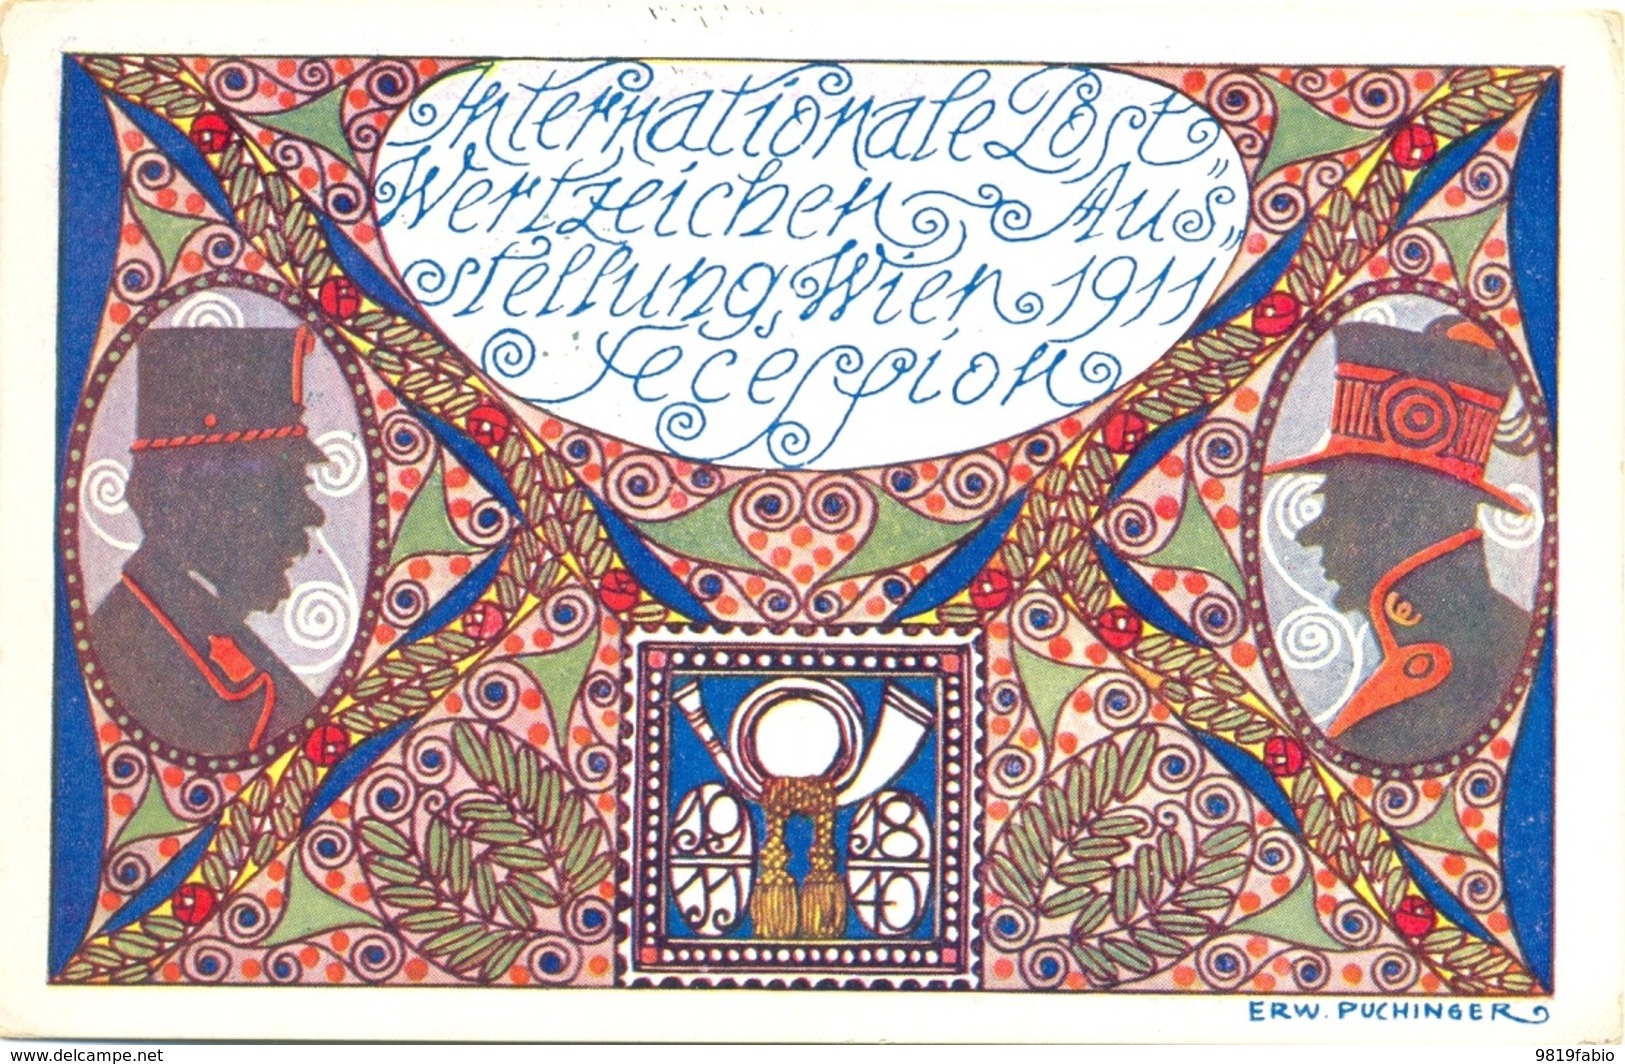 Puchinger International Post Wertzeichen Ausstellung Wien 1911 Secession - Exhibitions